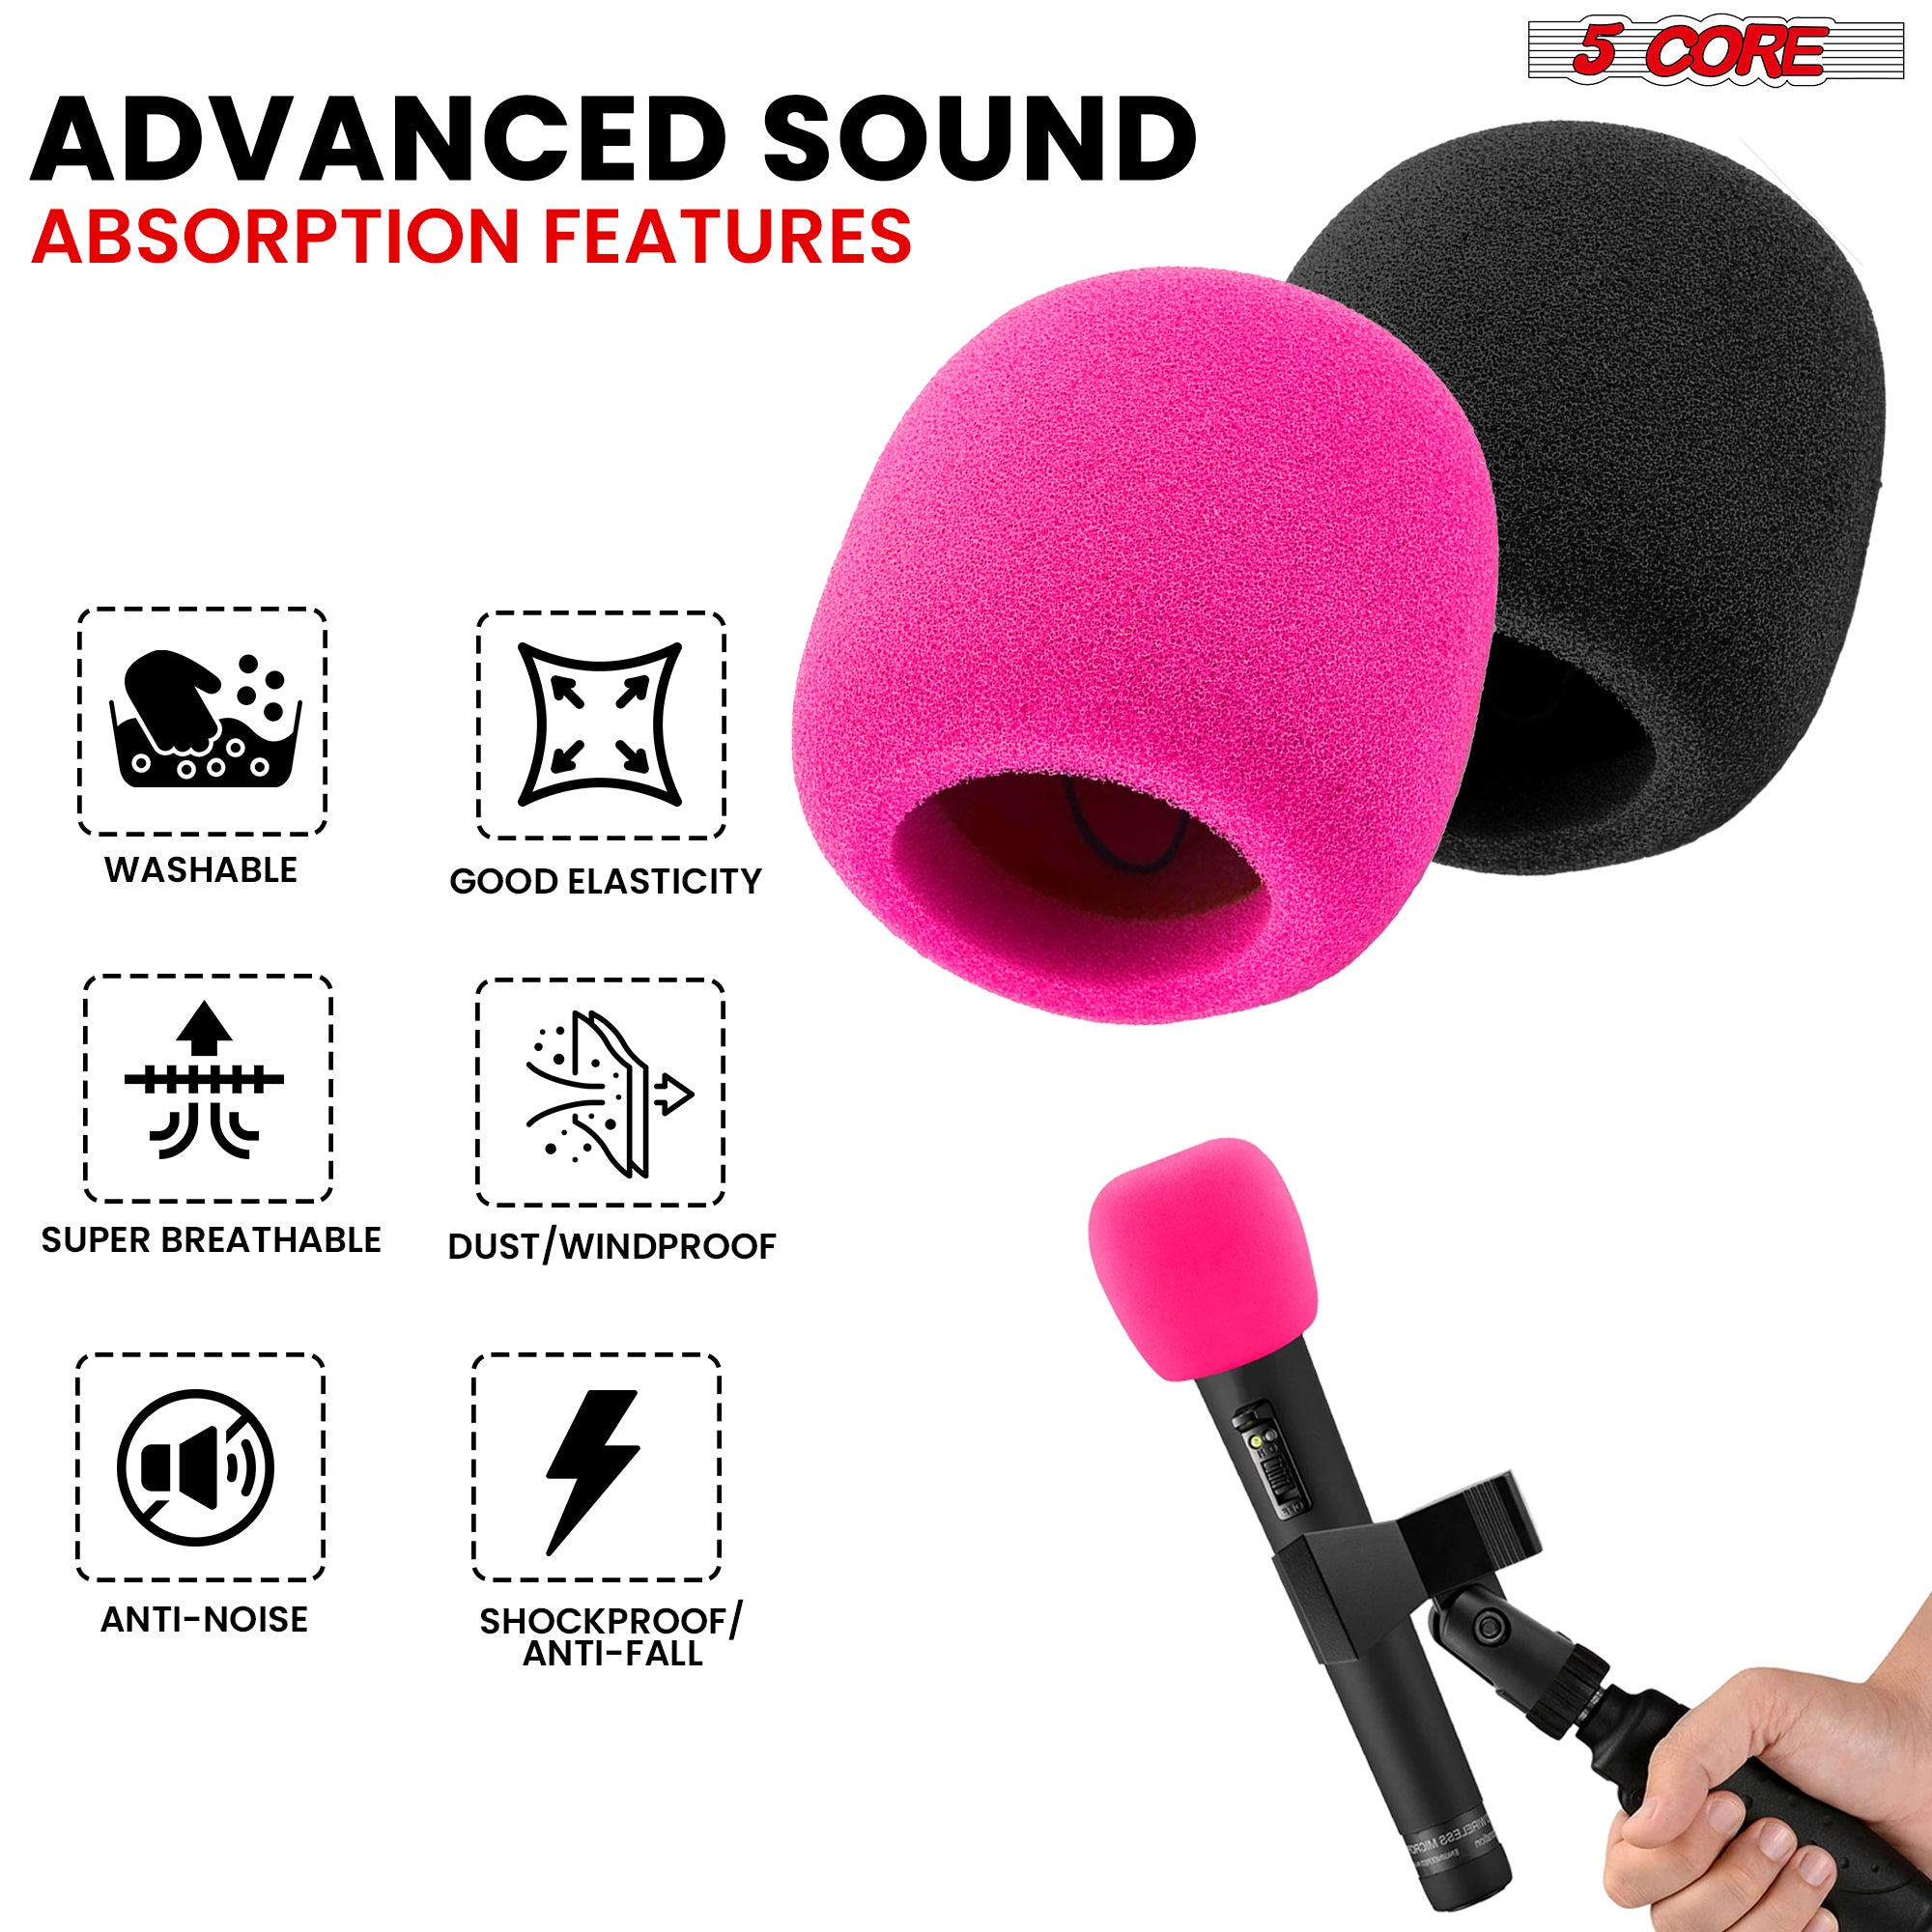 5 Core Microphone Cover Professional Mic Soft Foam Windscreen Windproof Sponge for Mics